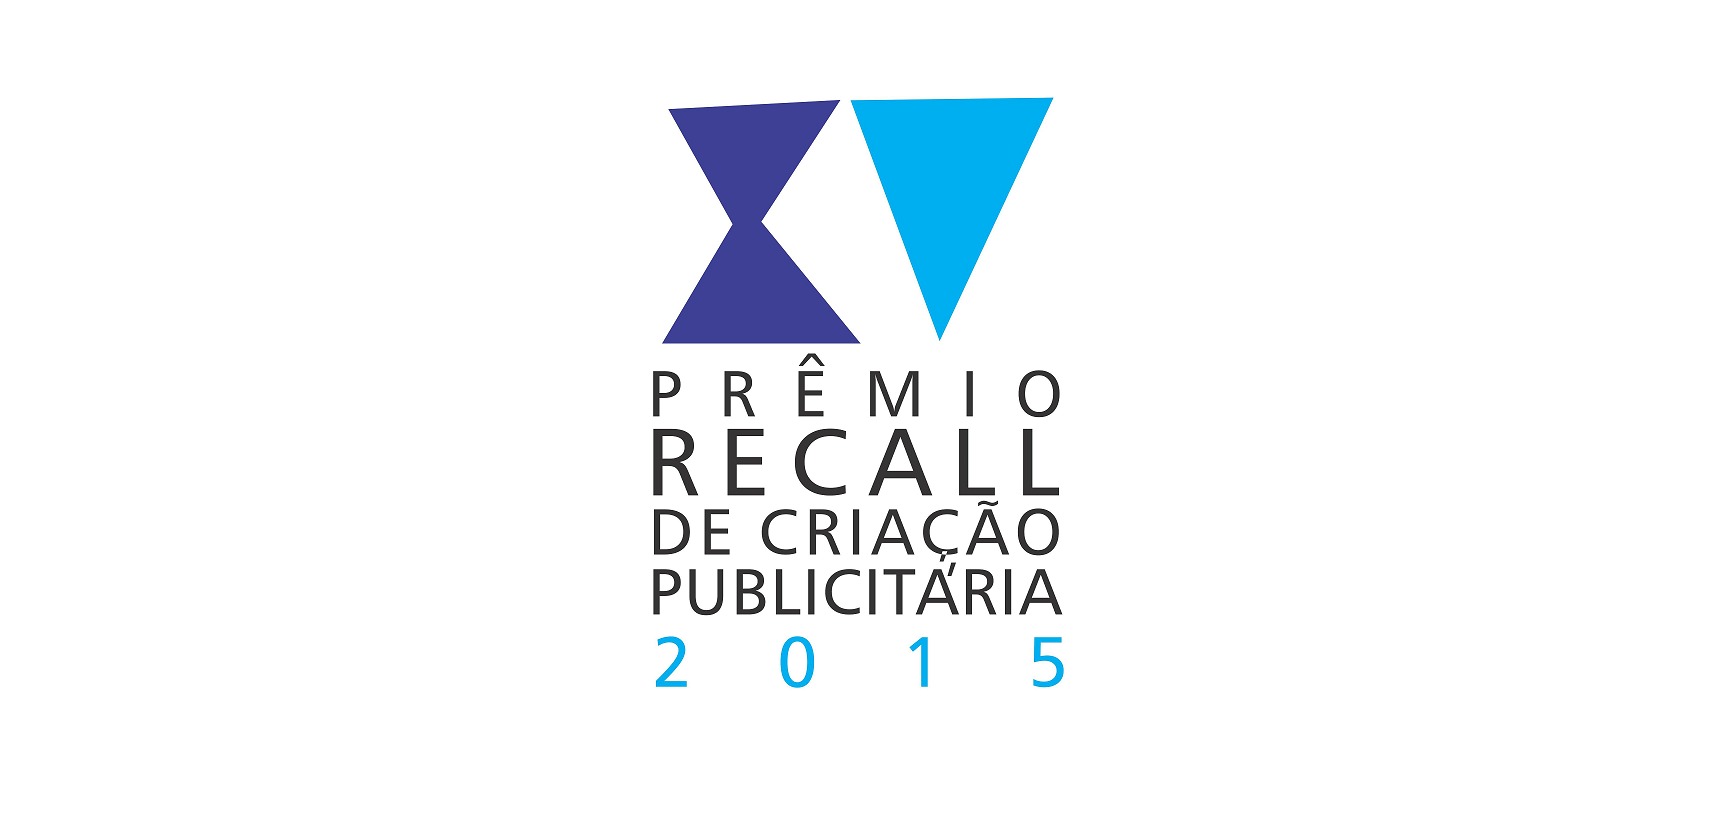 Última semana de inscrições no  Prêmio Recall de Criação Publicitária